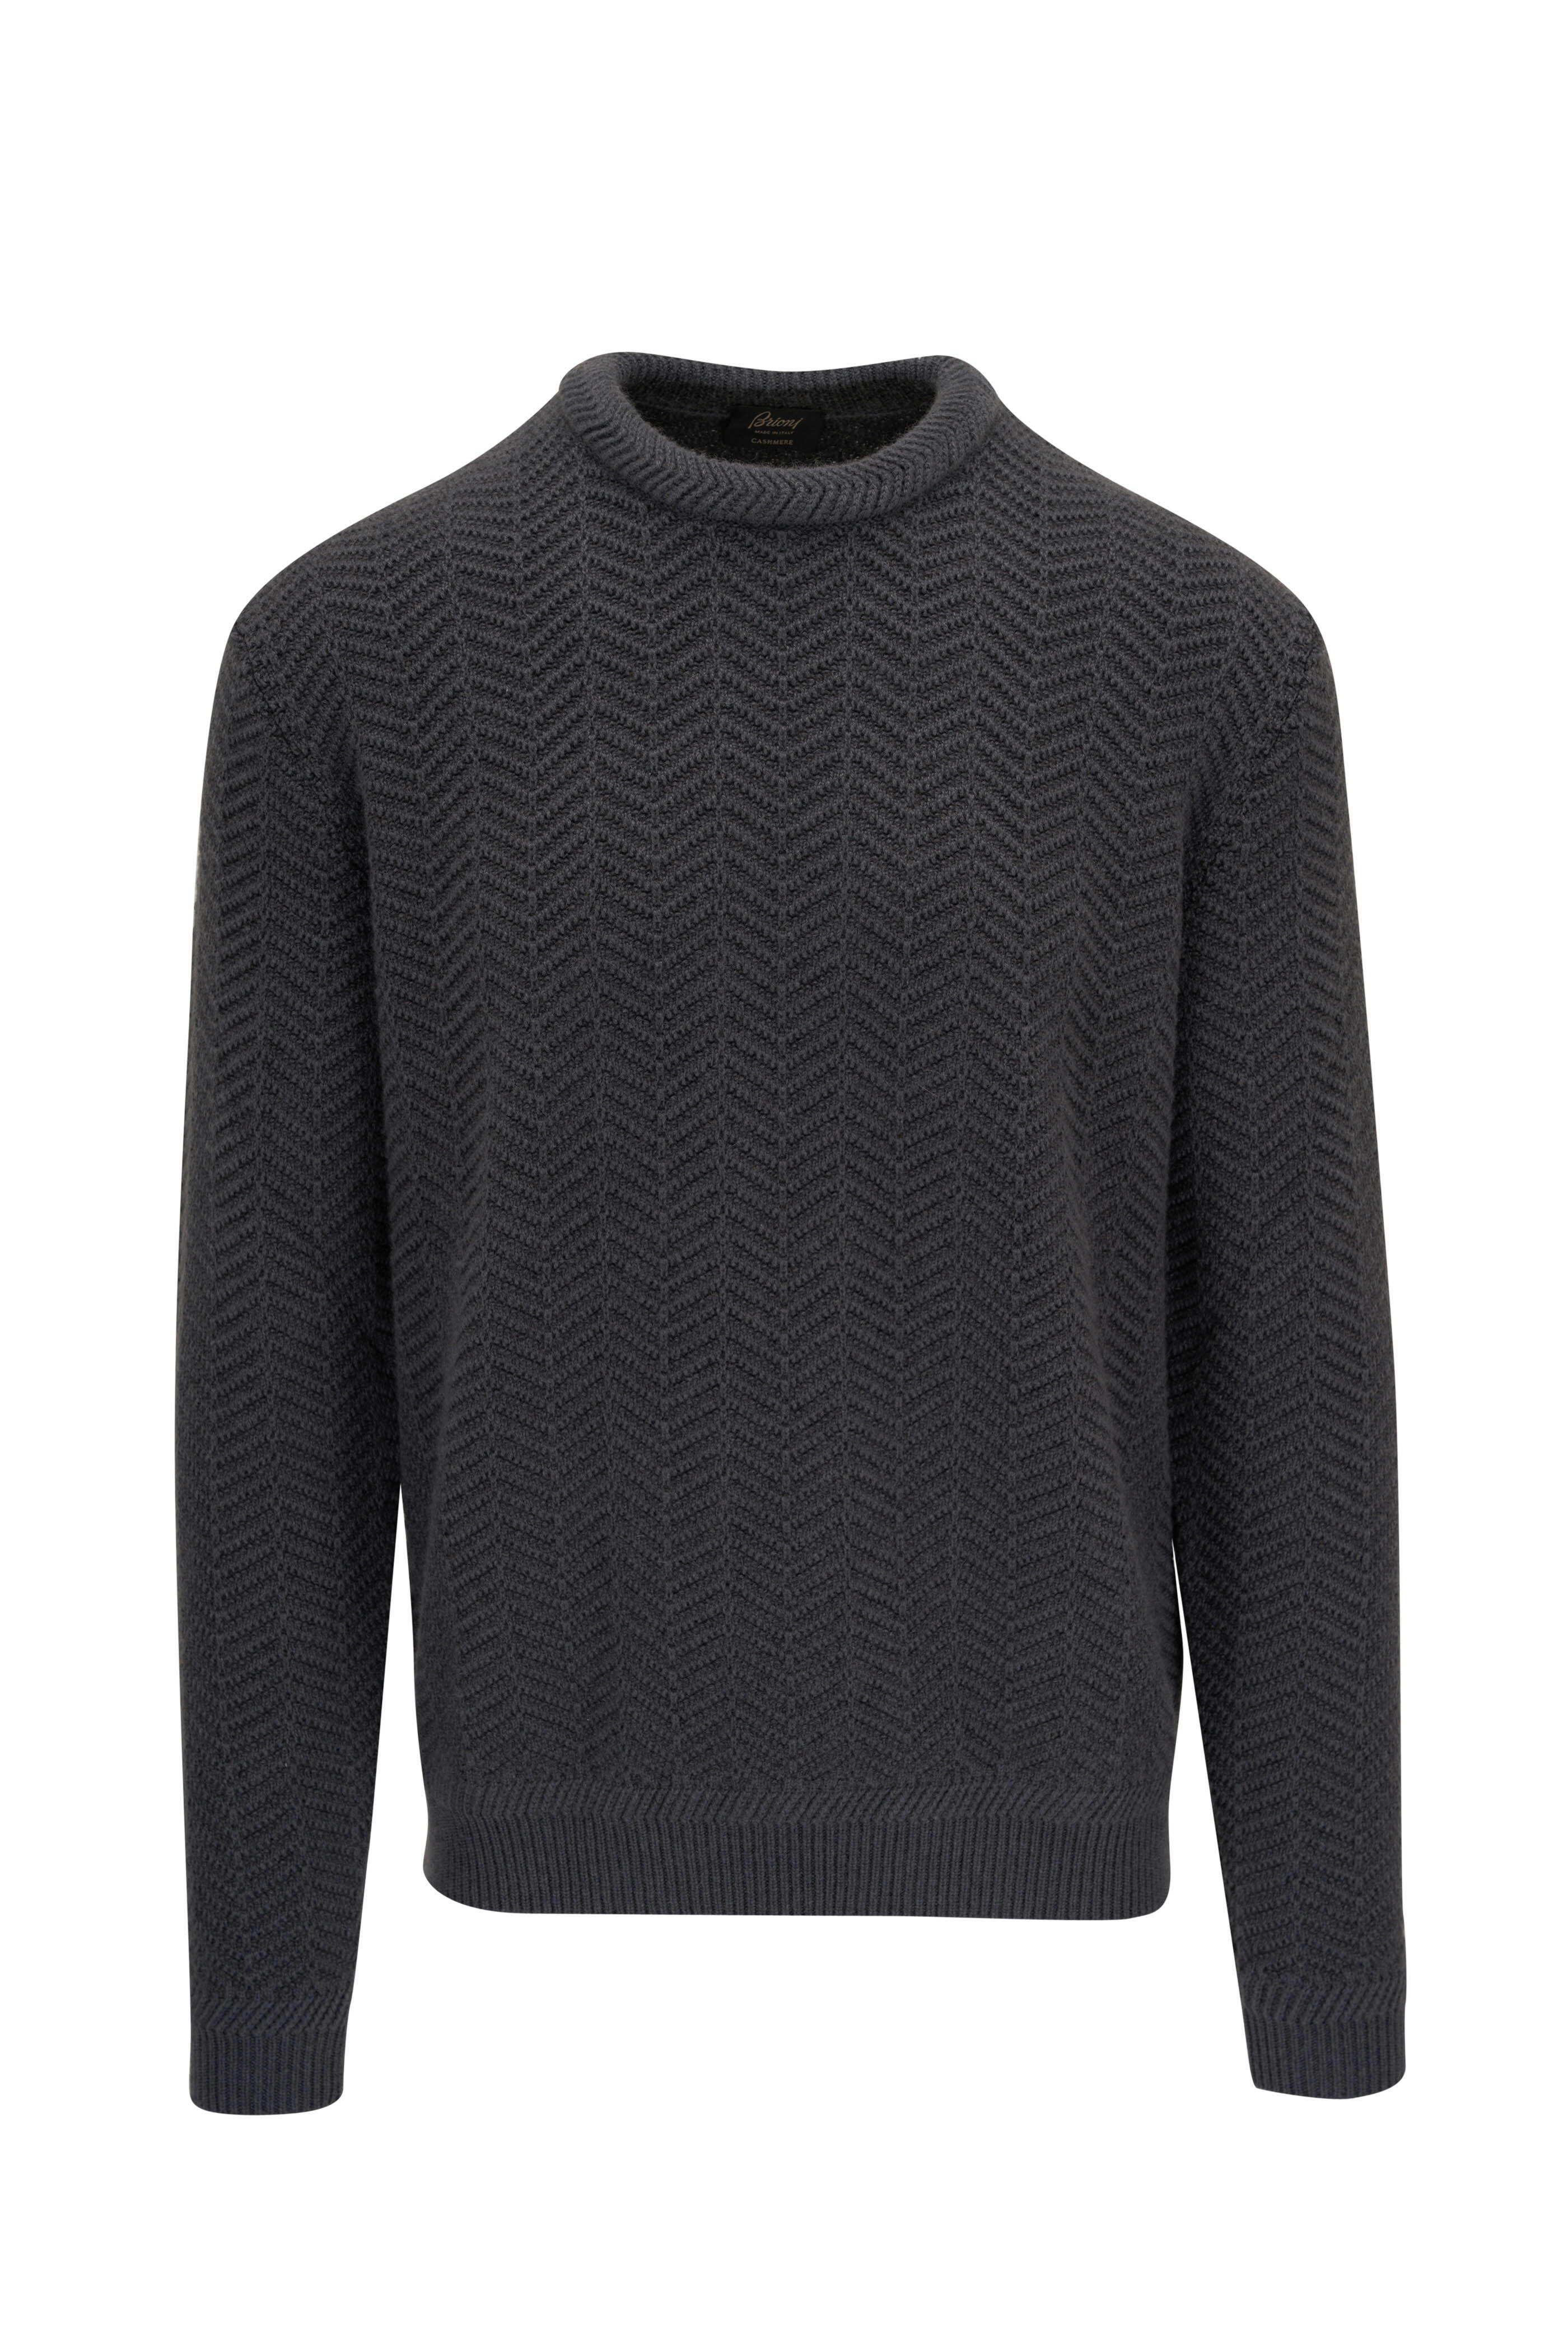 Brioni - Graphite Cashmere Crewneck Sweater | Mitchell Stores